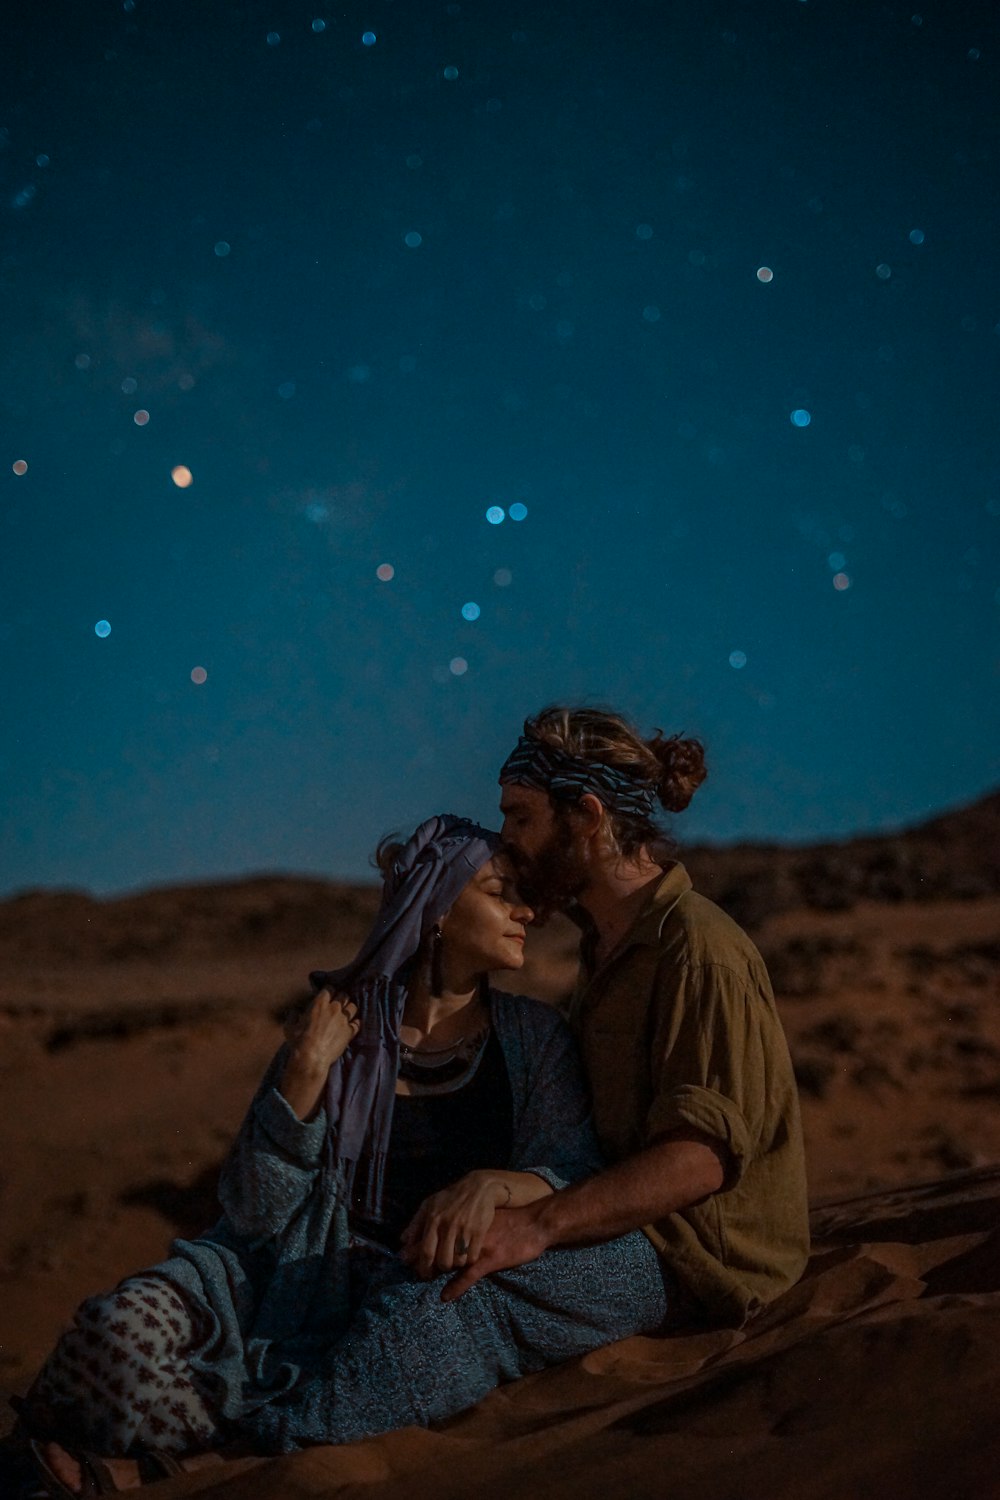 밤하늘 아래 사막 모래 위에 앉아 있는 남녀